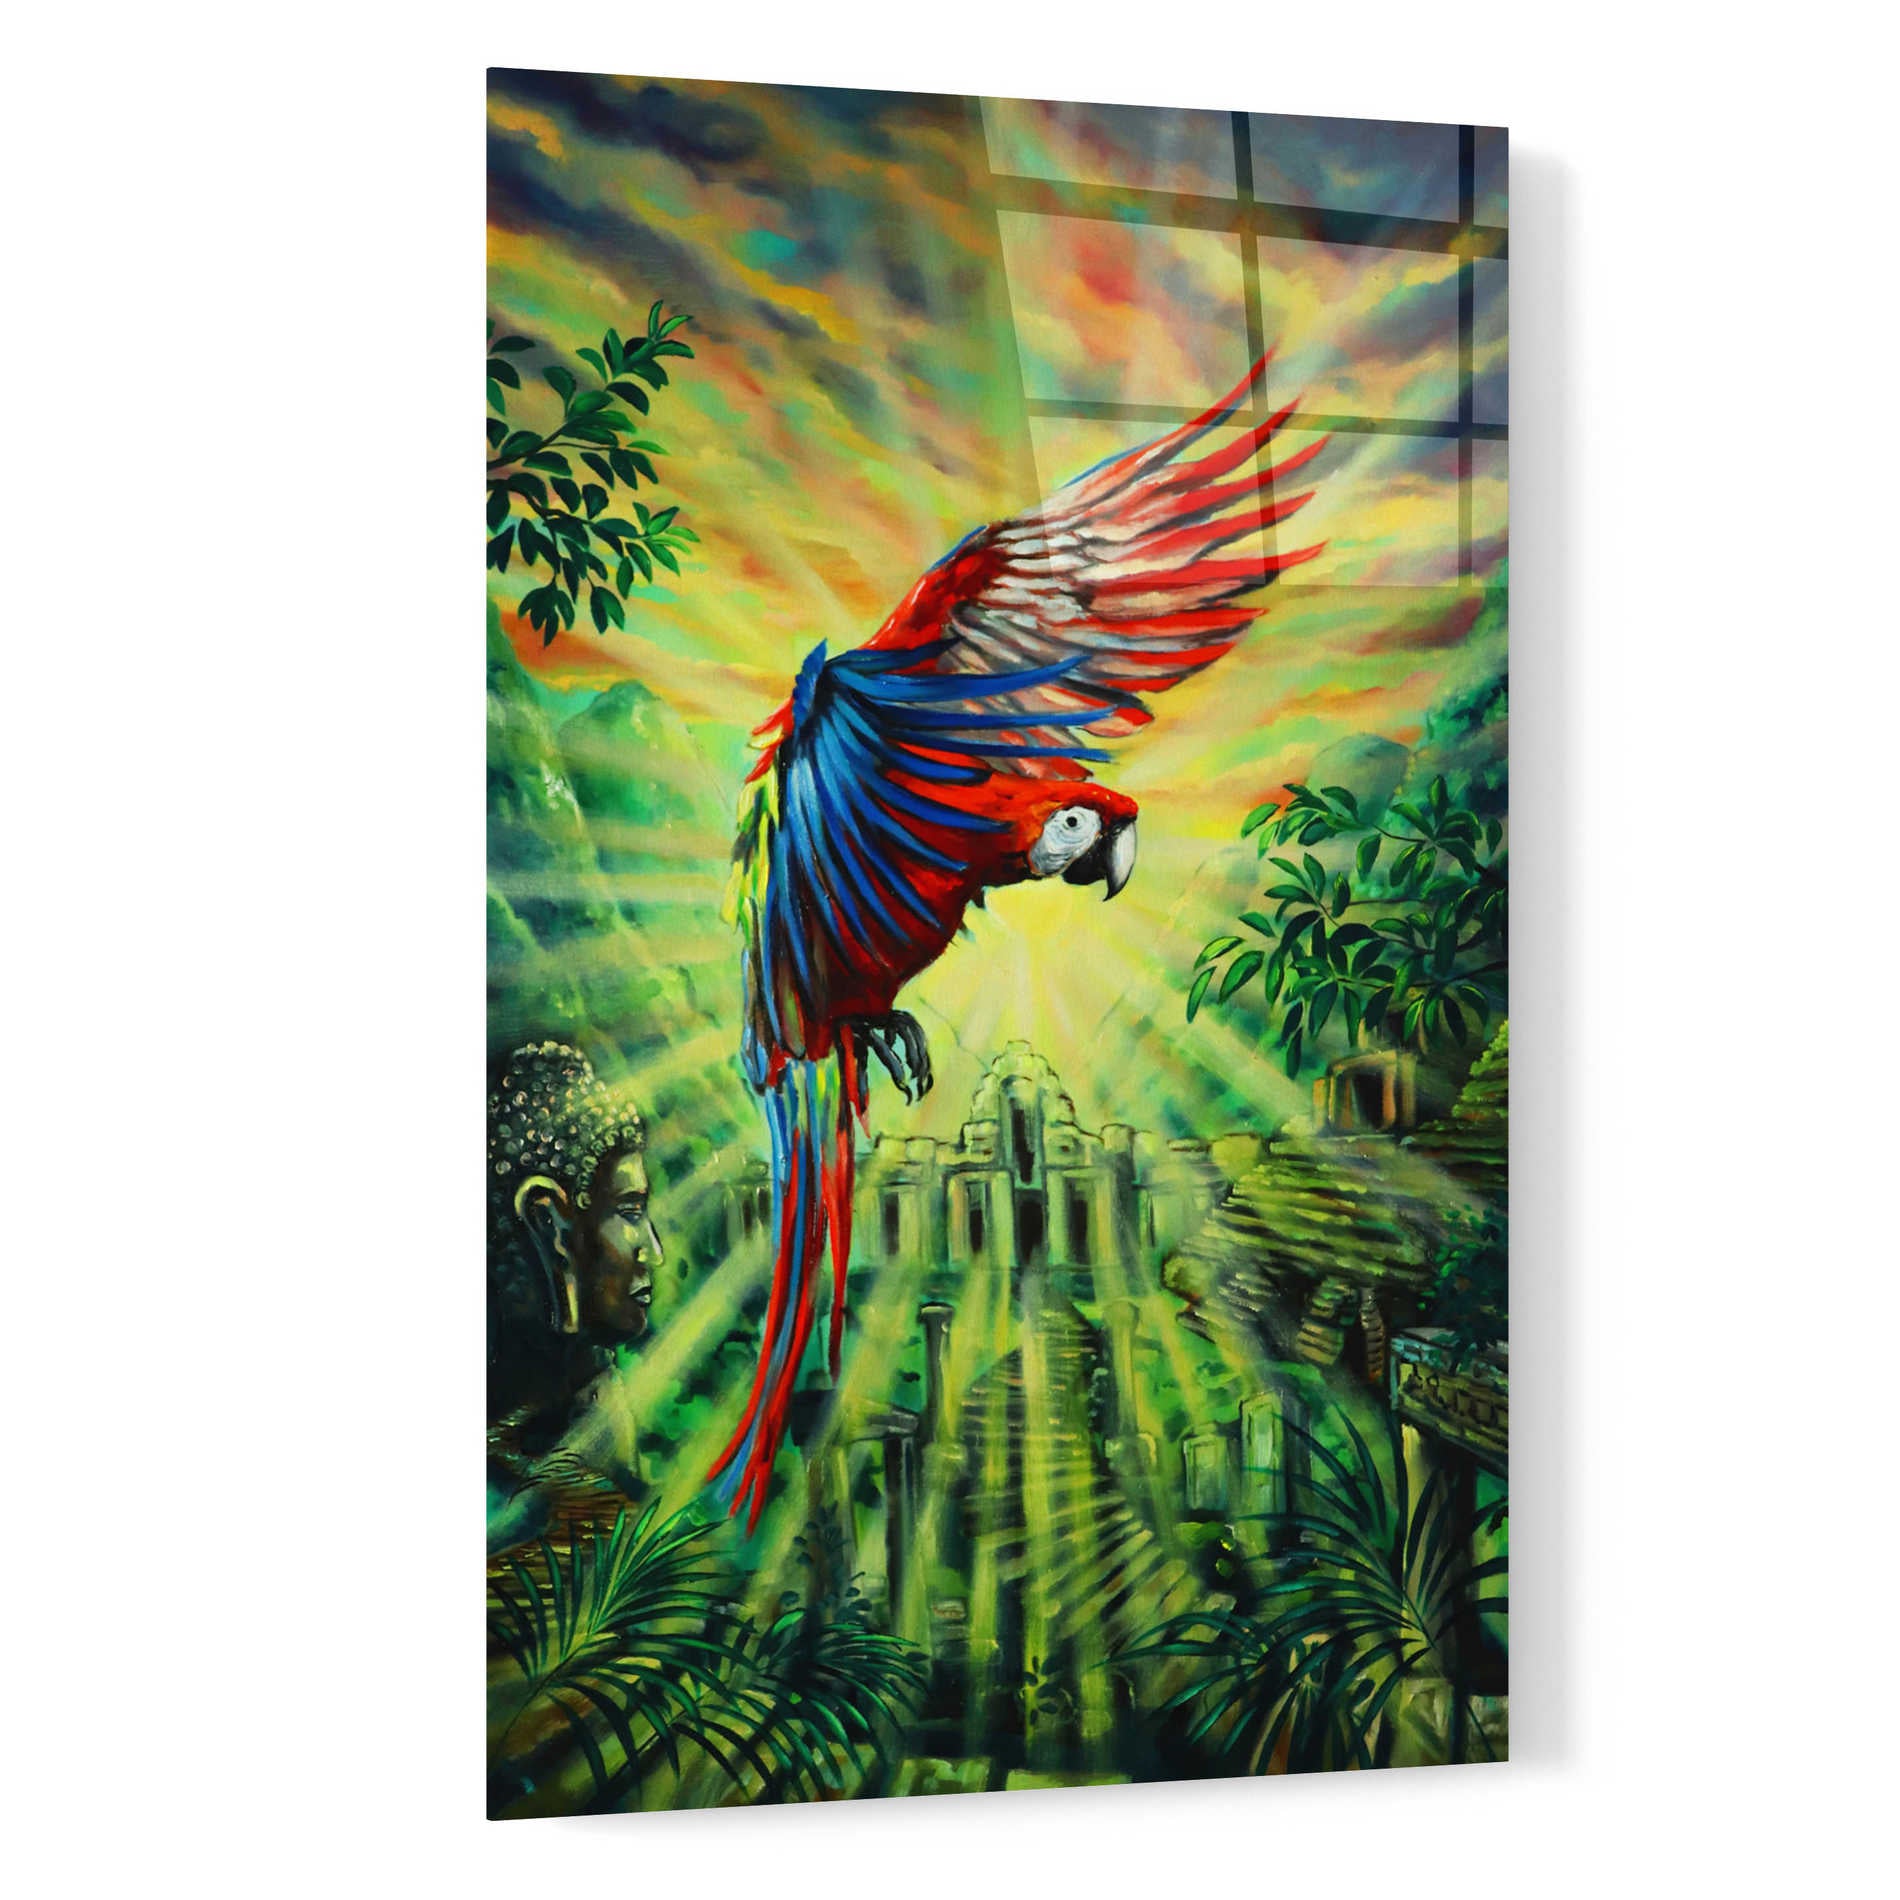 Epic Art 'Parrot Temple' by Jan Kasparec, Acrylic Glass Wall Art,16x24